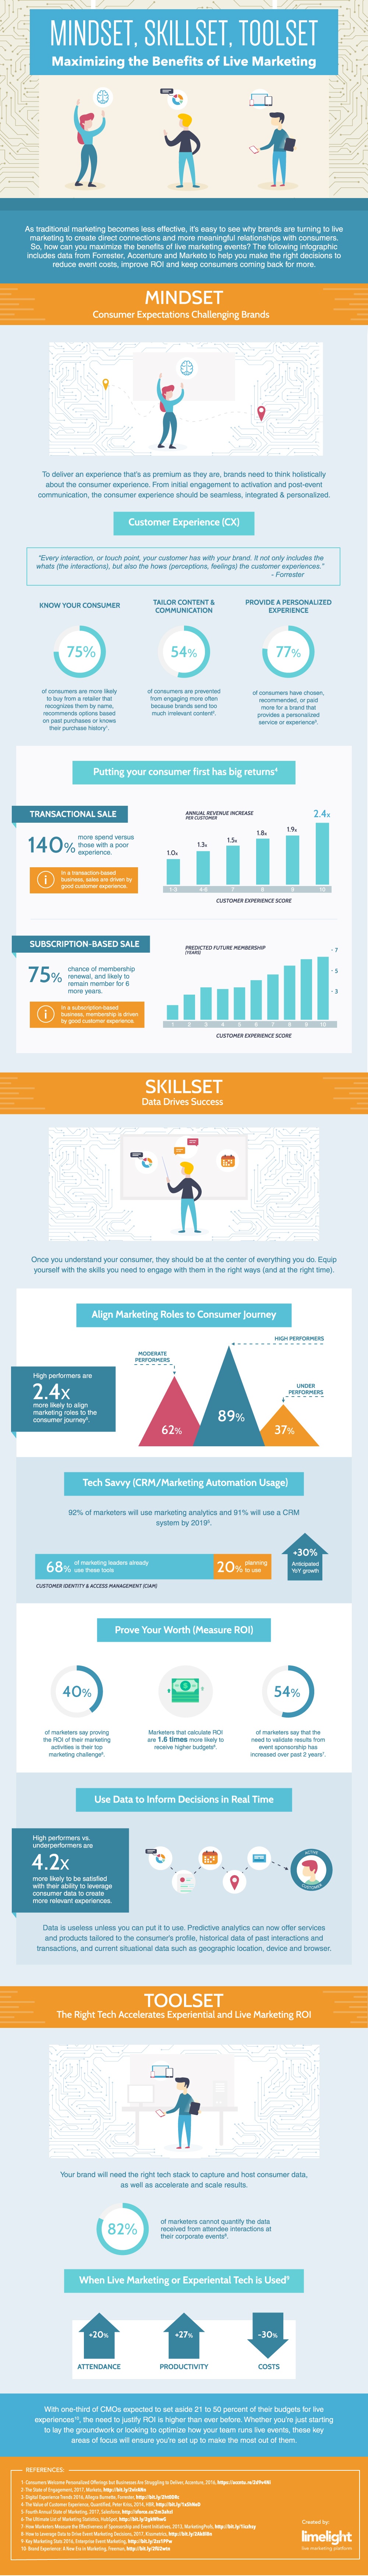 Mindset, Skillset, Toolset: Maximizing the Benefits of Live Marketing Infographic